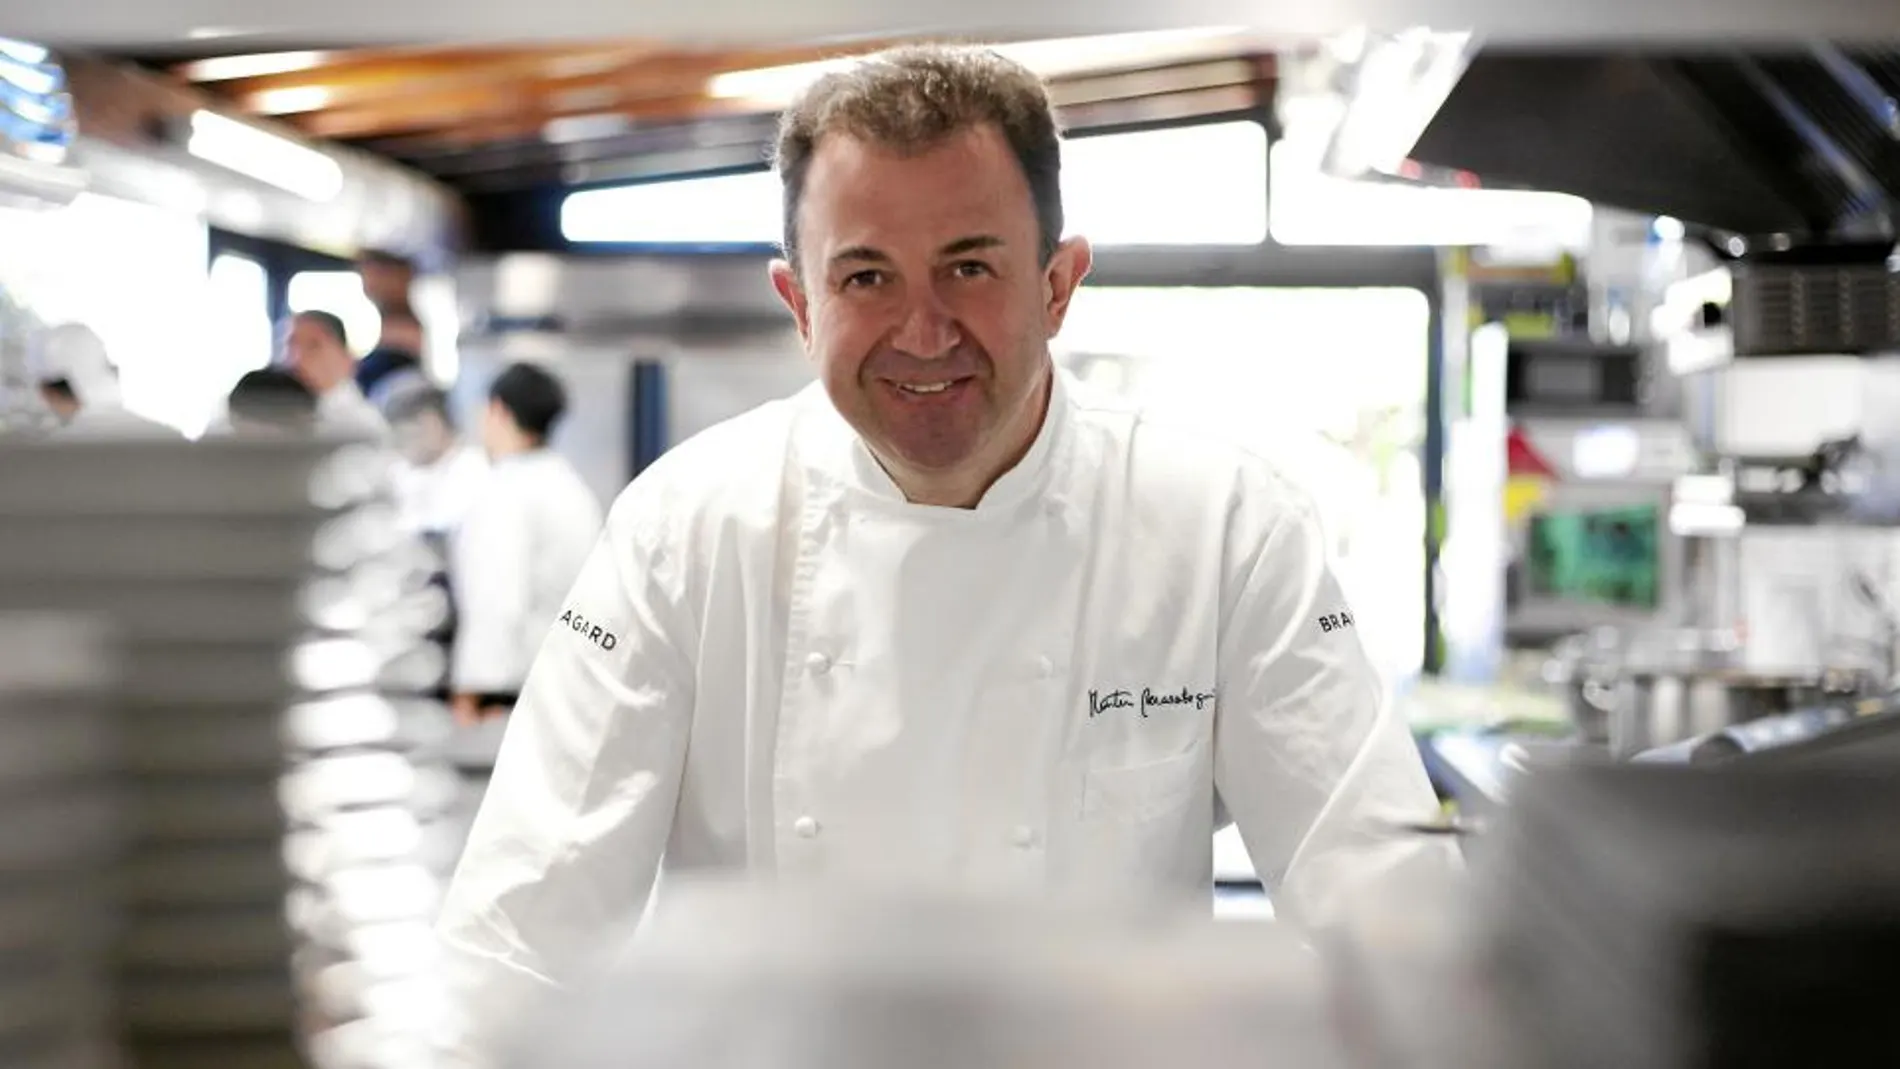 El cocinero, con ocho estrellas Michelin, sumará un total de 17 espacios repartidos por el mundo